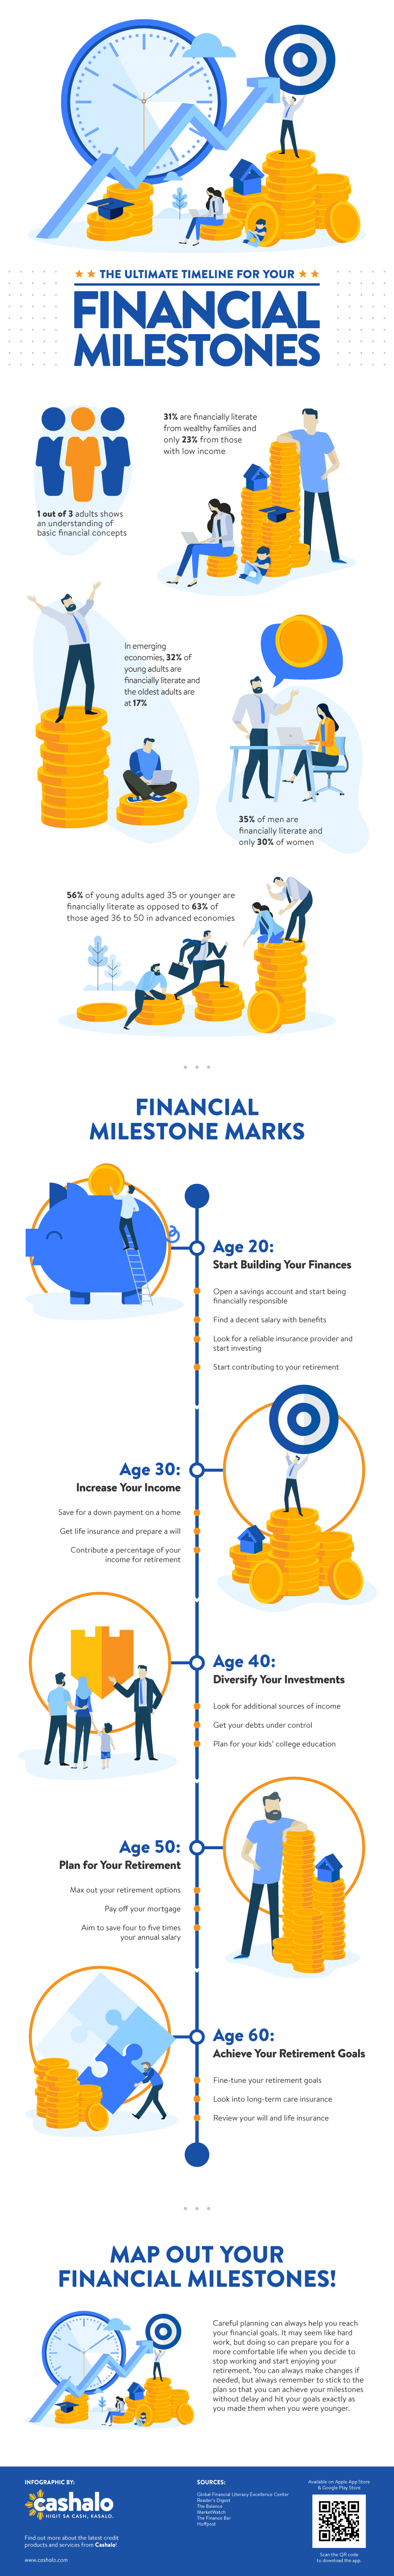 financial milestones